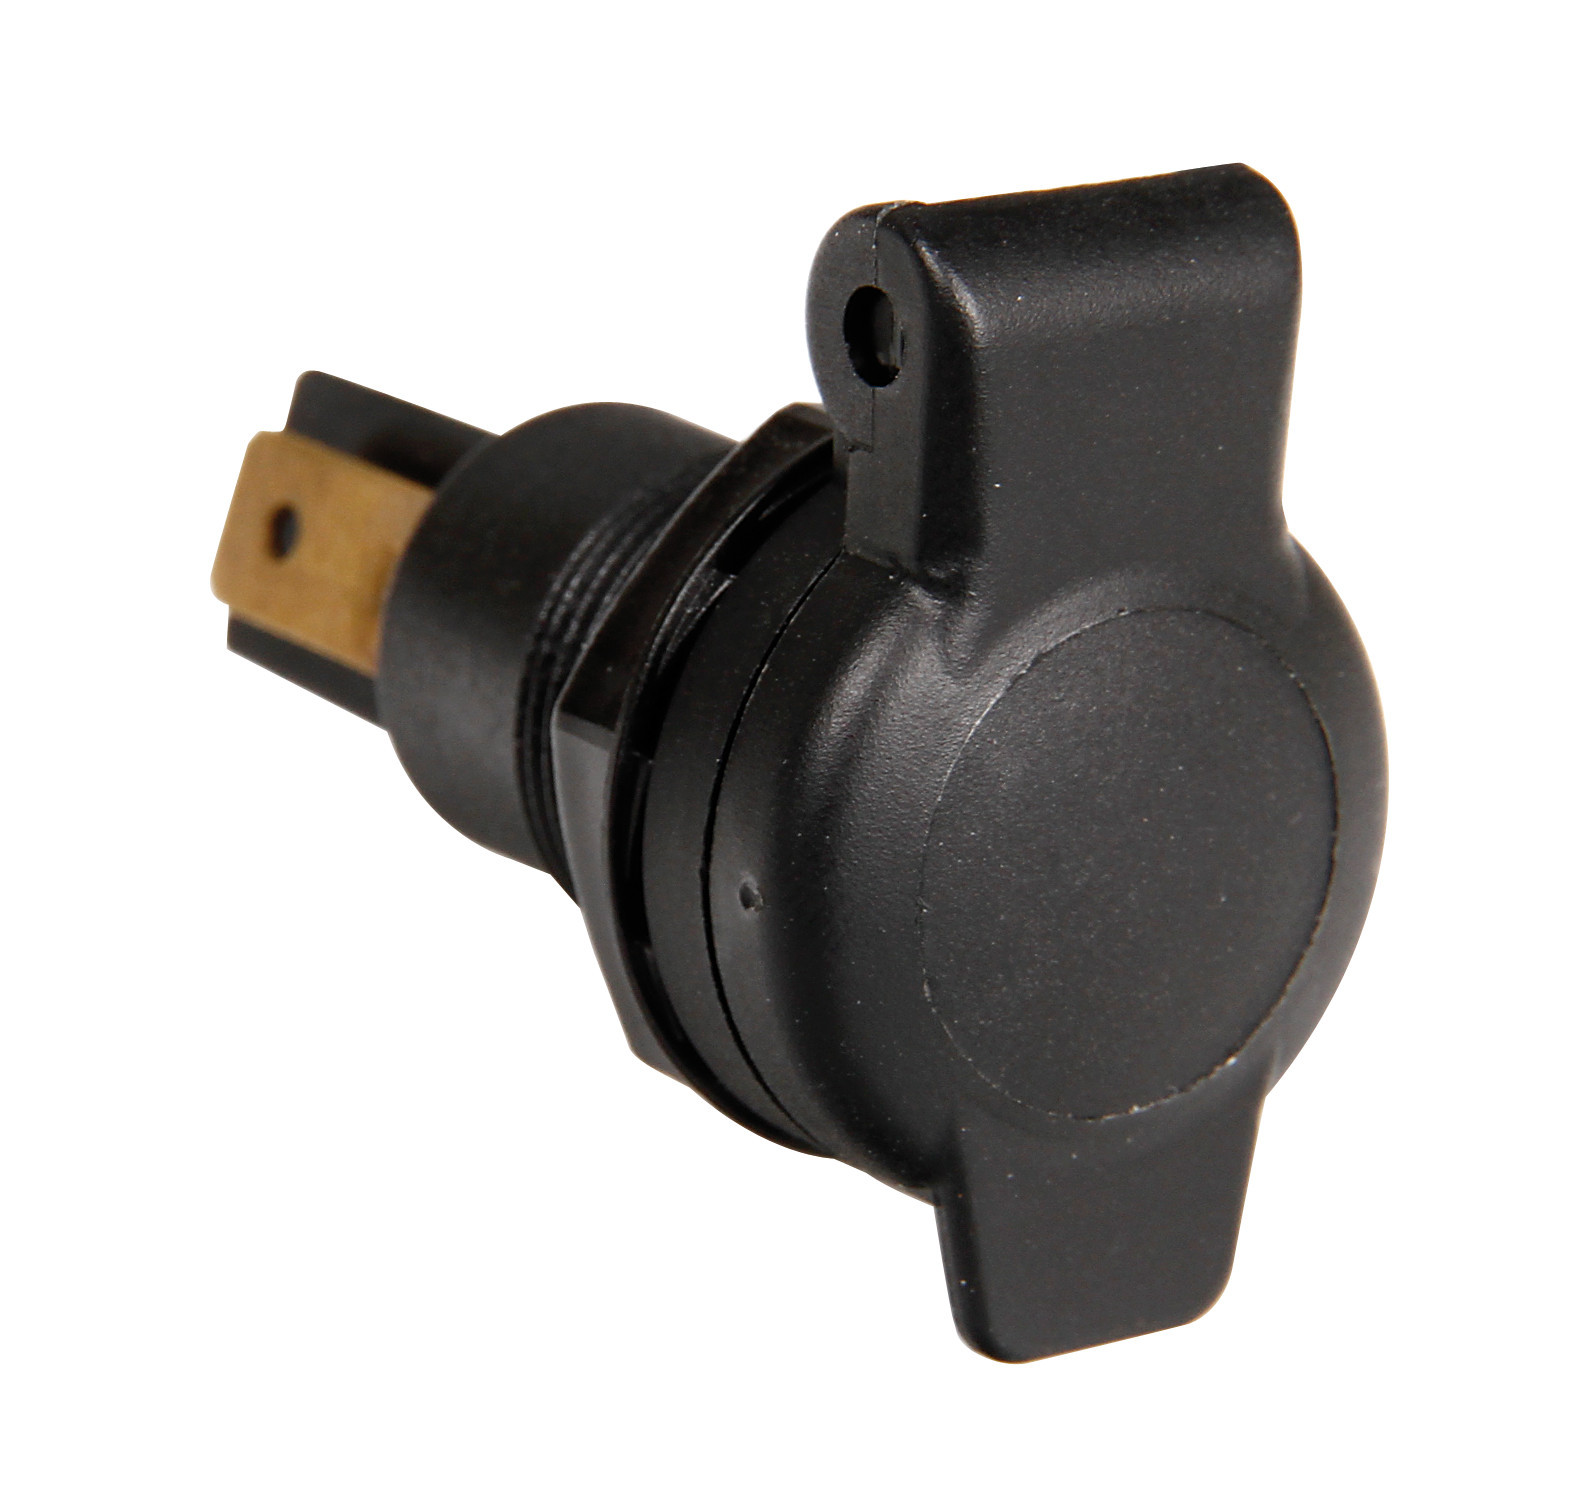 Flush mount, built-in DIN socket, 12/24V 16A - Lampa - Resealed thumb